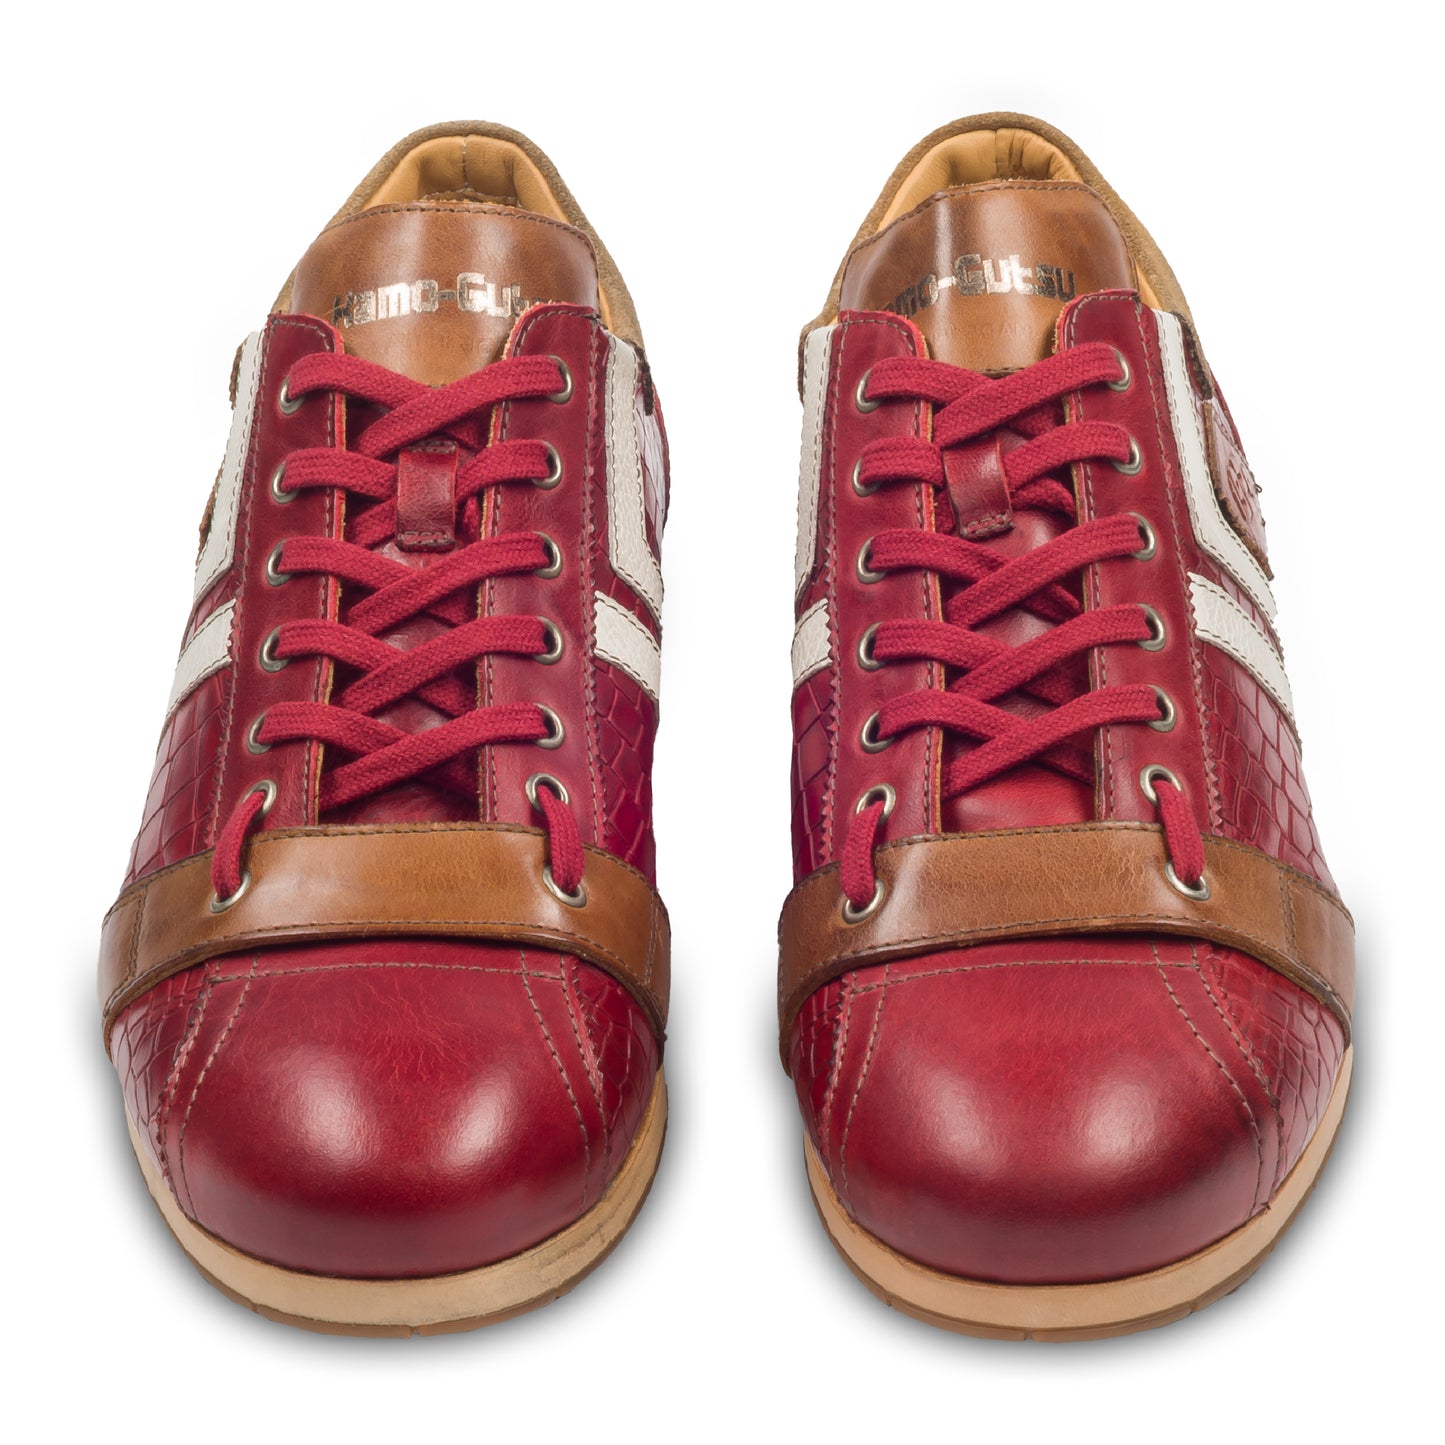 KAMO-GUTSU Herren Leder Sneaker, rot, Modell TIFO-030 croco rosso. Handgefertigt. Paarweise Ansicht von vorne.